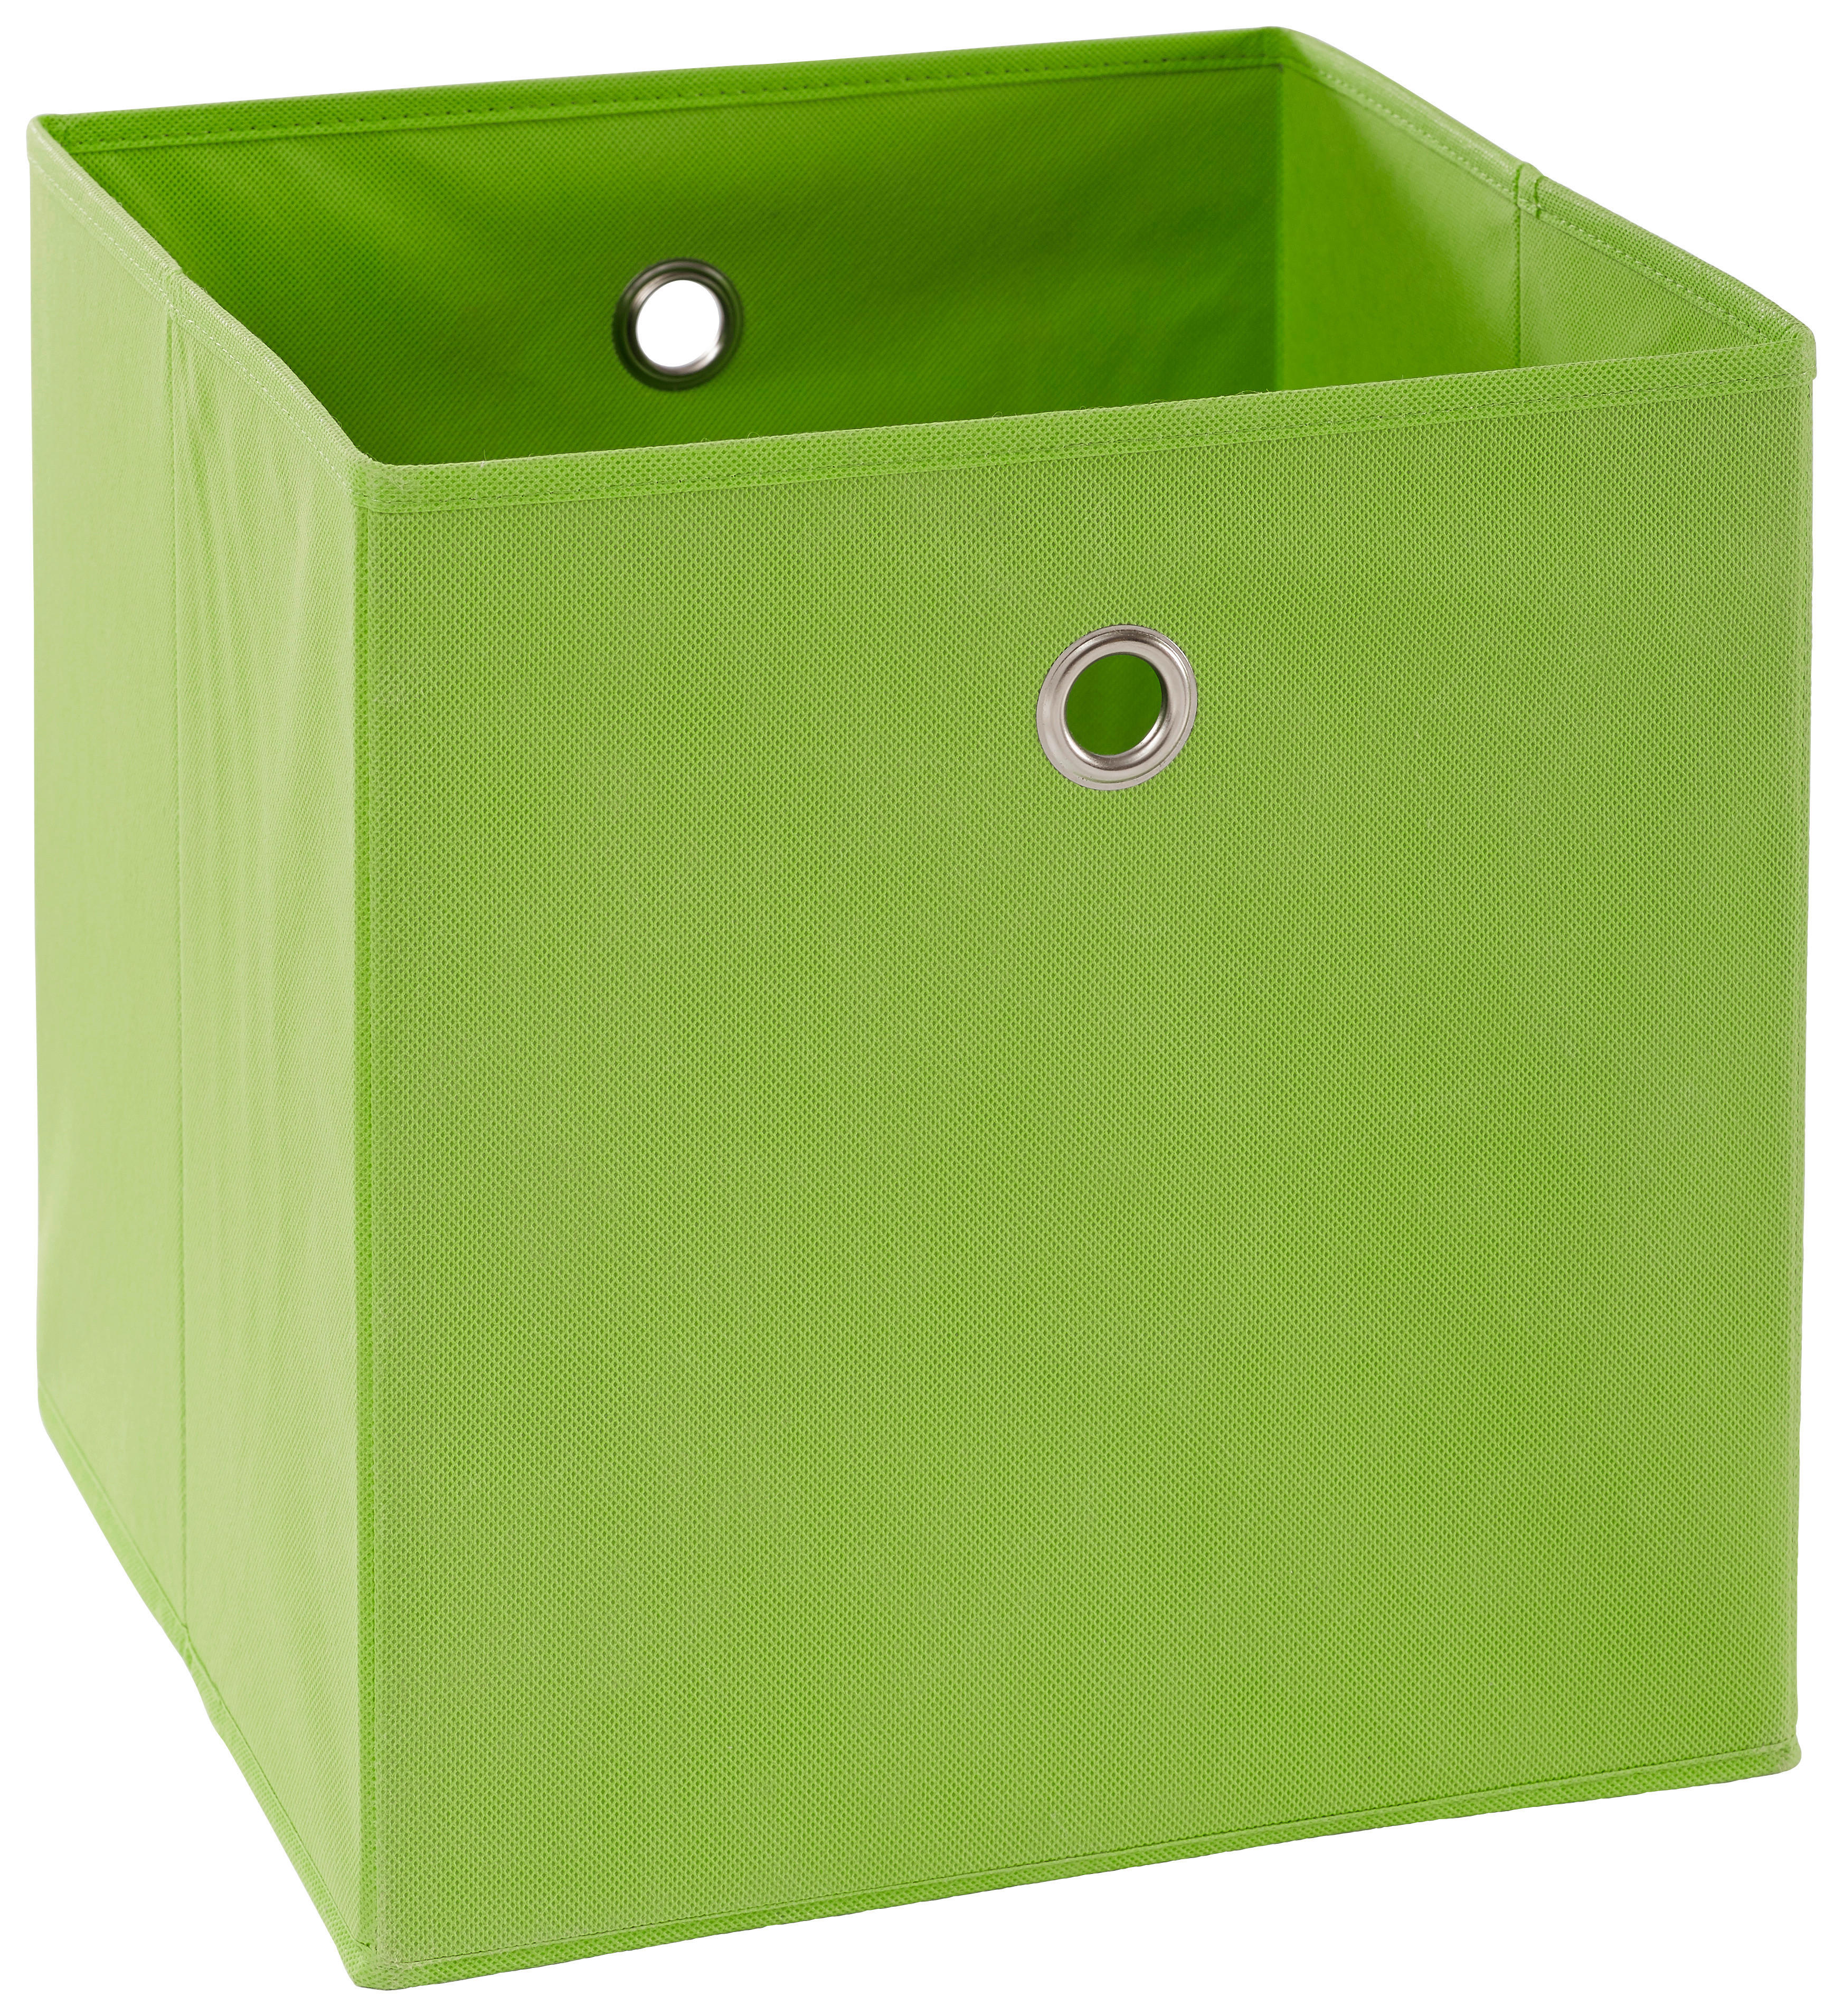 SKLADACÍ BOX, kov, textil, kartón, 32/32/32 cm - zelená/strieborná, Design, kartón/kov (32/32/32cm) - Carryhome